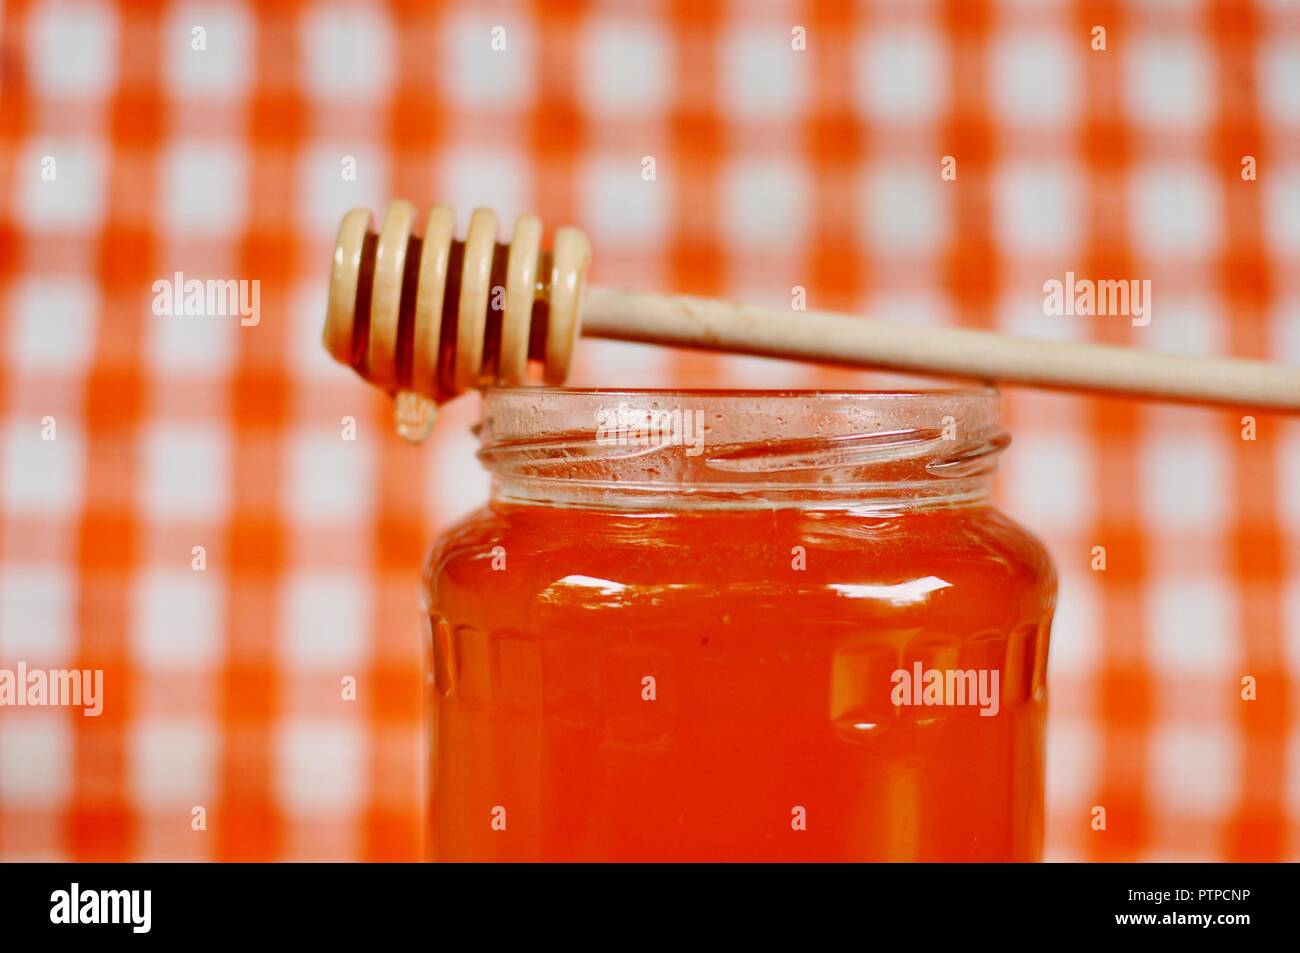 Pot de miel orange doré et bâton en bois debout de balancier sur la bouche du pot. Grille blanche et orange, gros plan, arrière-plan copie espace, sélective Banque D'Images